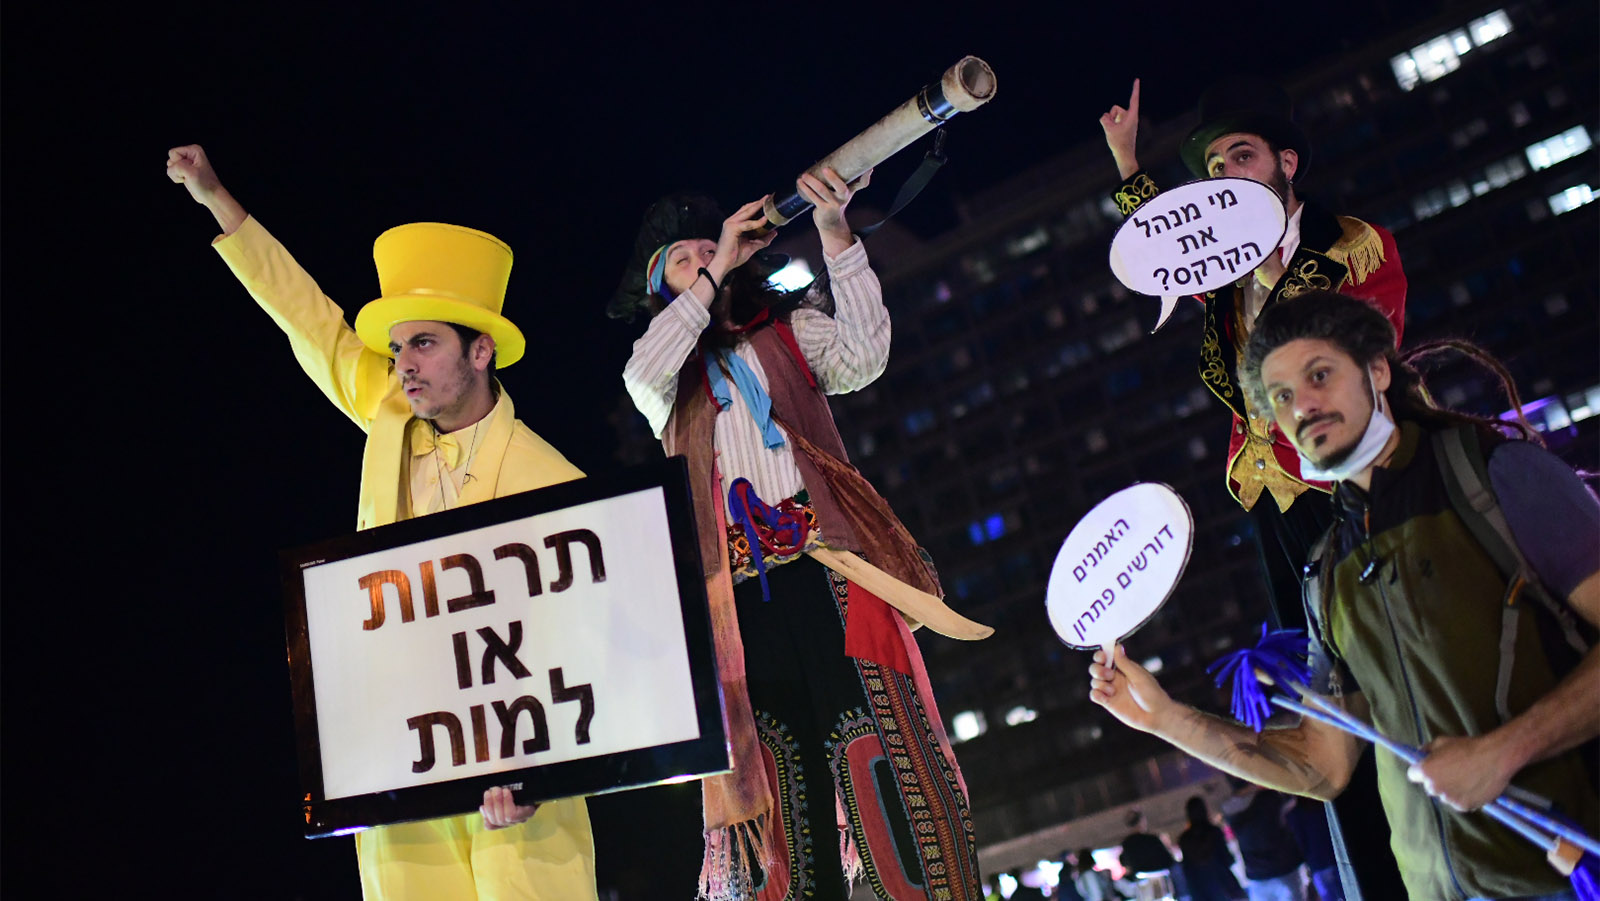 מחאת האמנים, עובדי הבמות ותעשיית הבידור בכיכר רבין (צילום: תומר ניוברג/פלאש90)